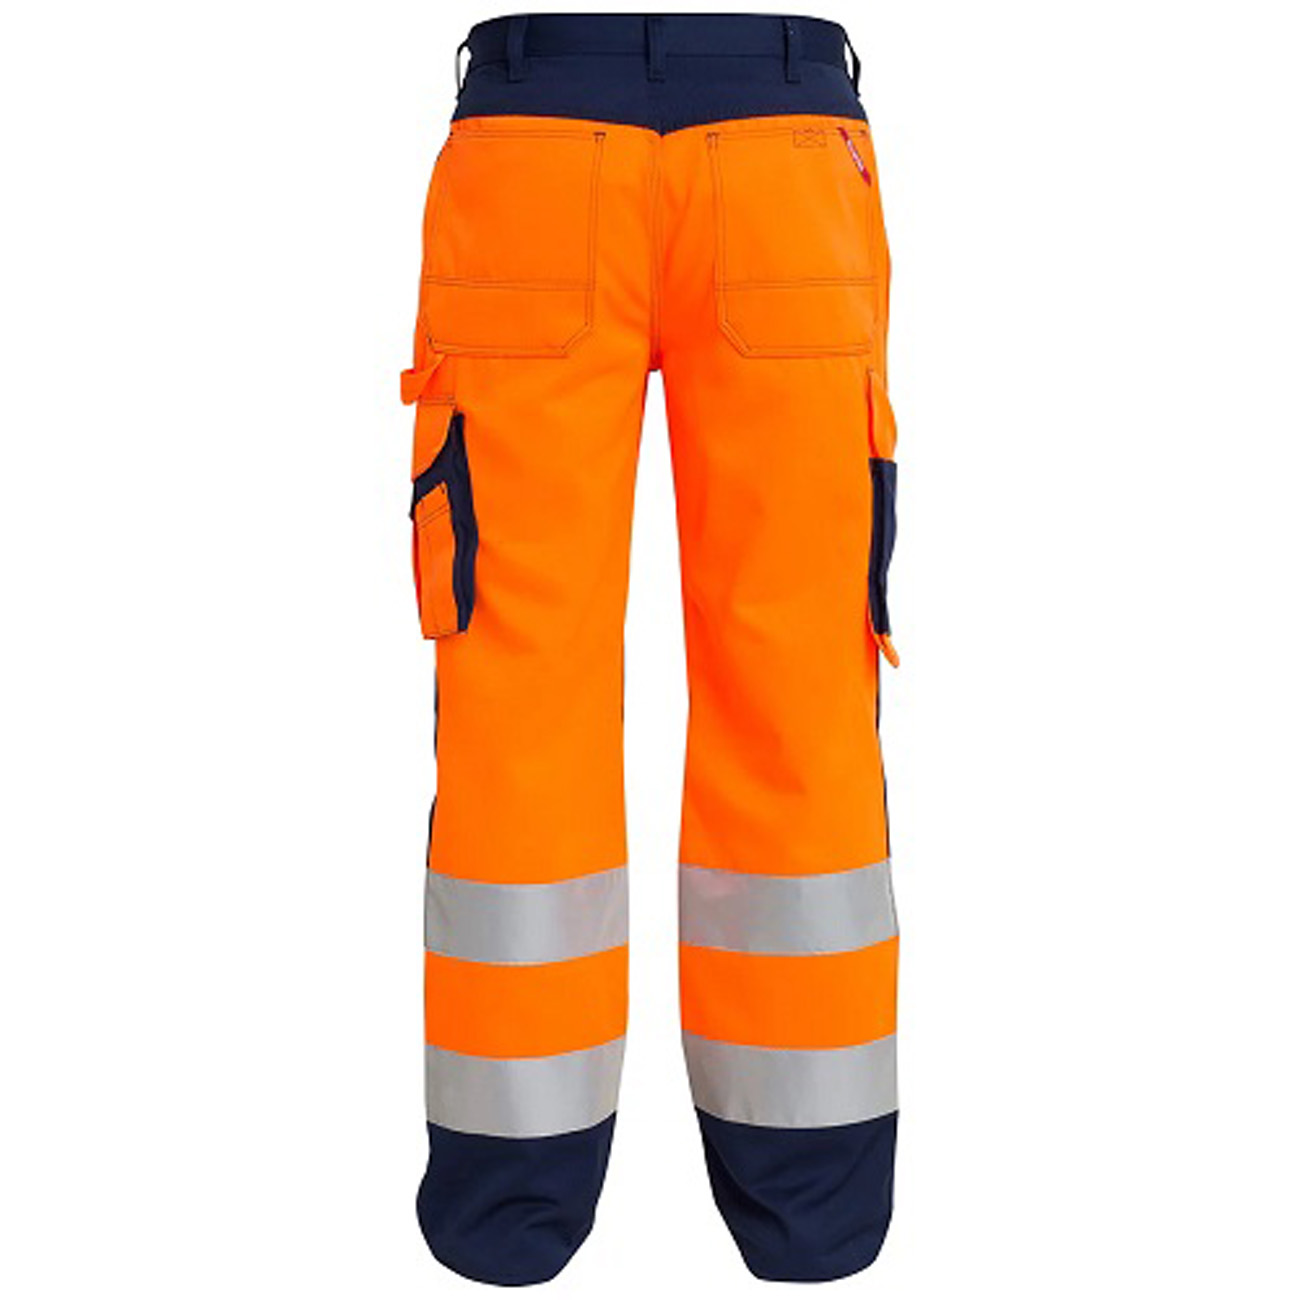 ENGEL Bundhose orange/marine Nr. 2701-425 Arbeitshose Arbeitsschutz Hose Arbeit